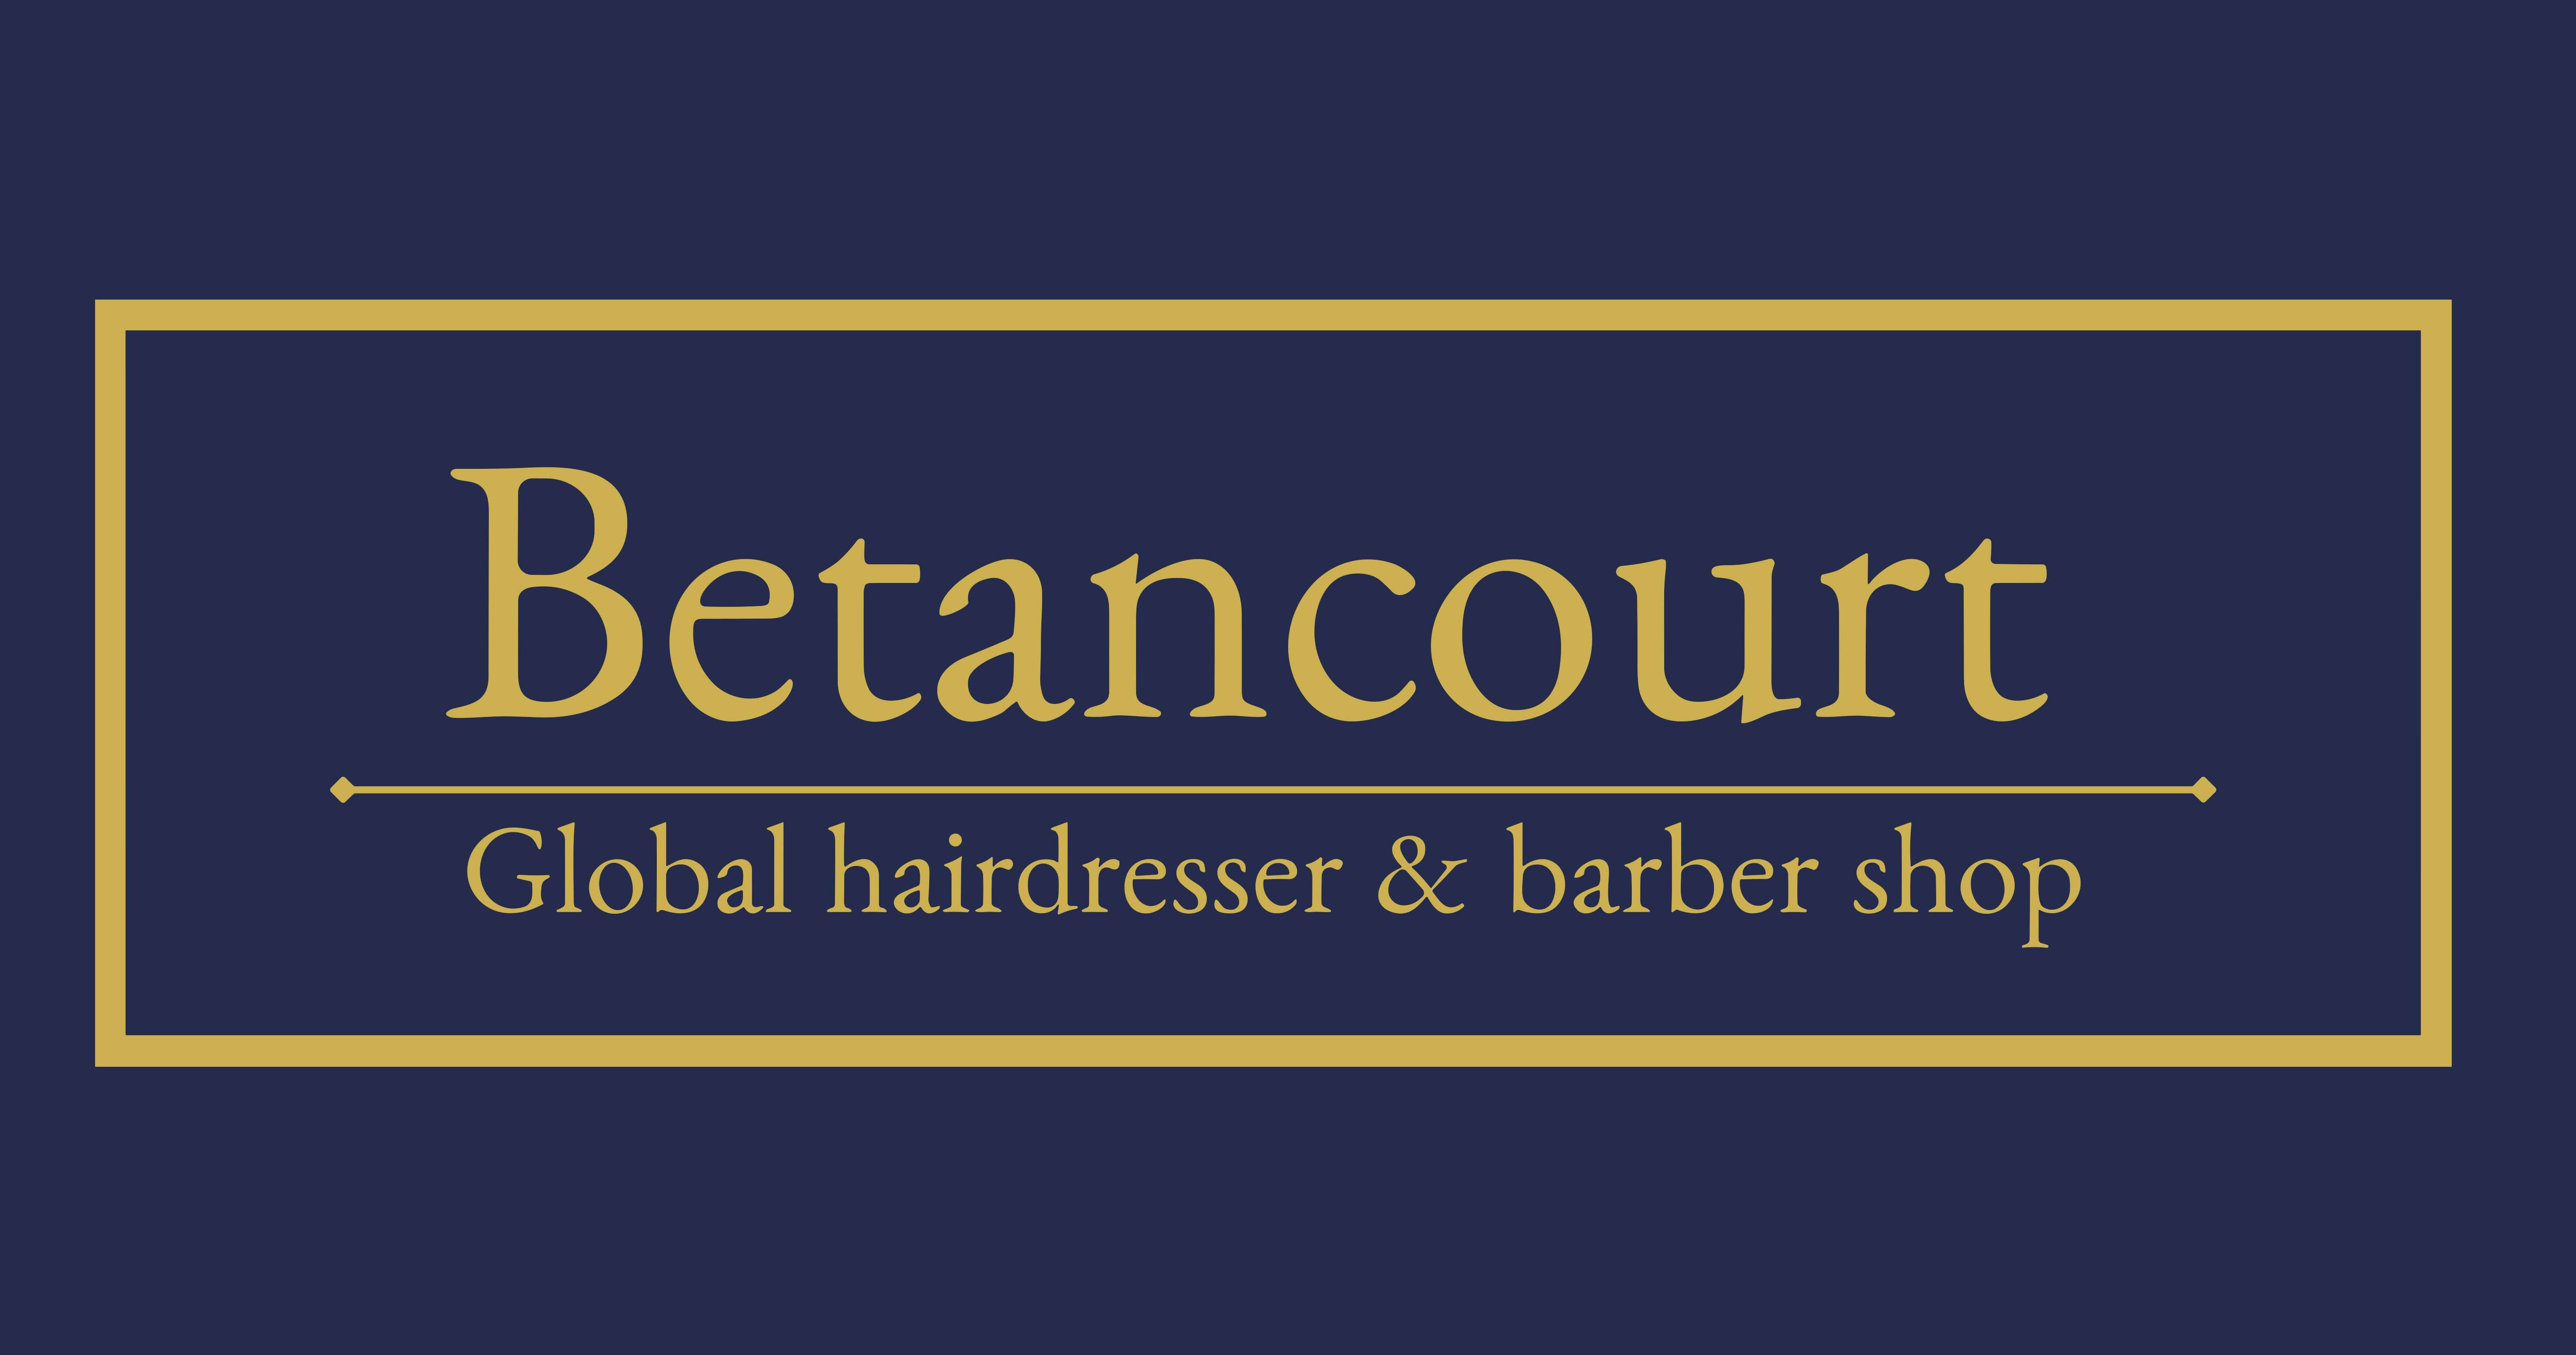 Betancourt Global hairdresser & barber shop Madrid Imagen 